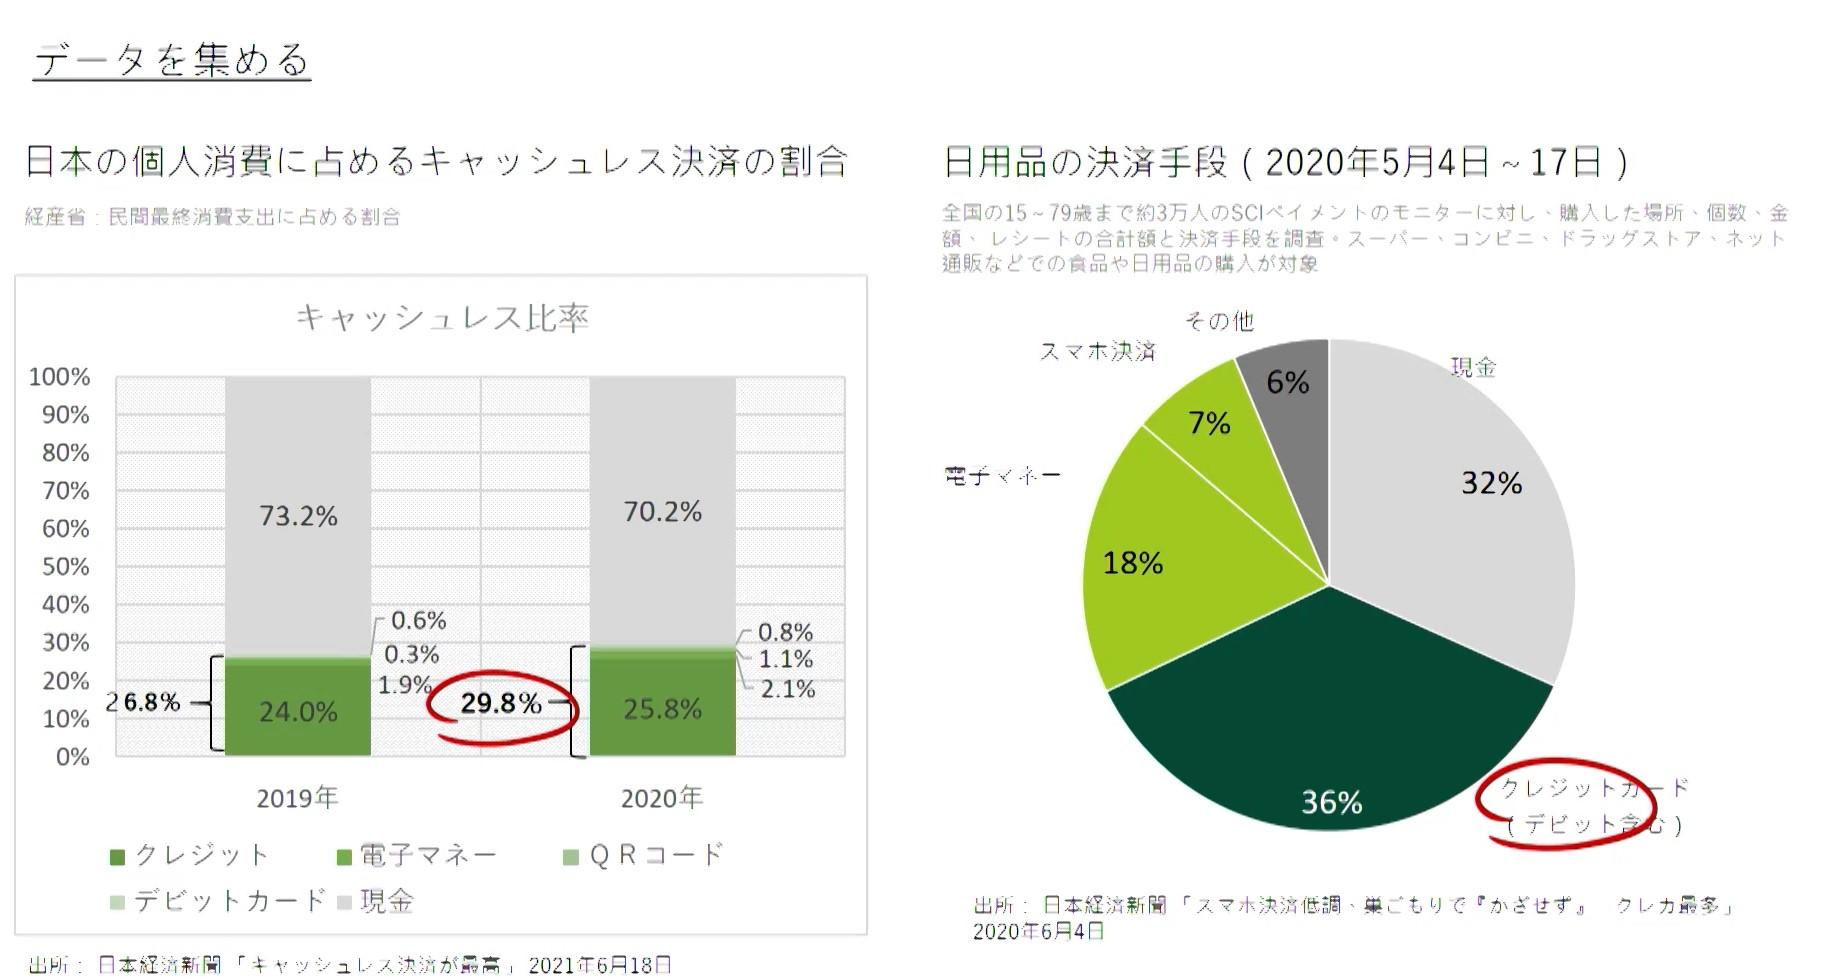 https://news.mynavi.jp/itsearch/assets_c/%E4%B8%89%E4%BA%95%E4%BD%8F%E5%8F%8B%E3%82%AB%E3%83%BC%E3%83%89%E2%91%A1.jpg